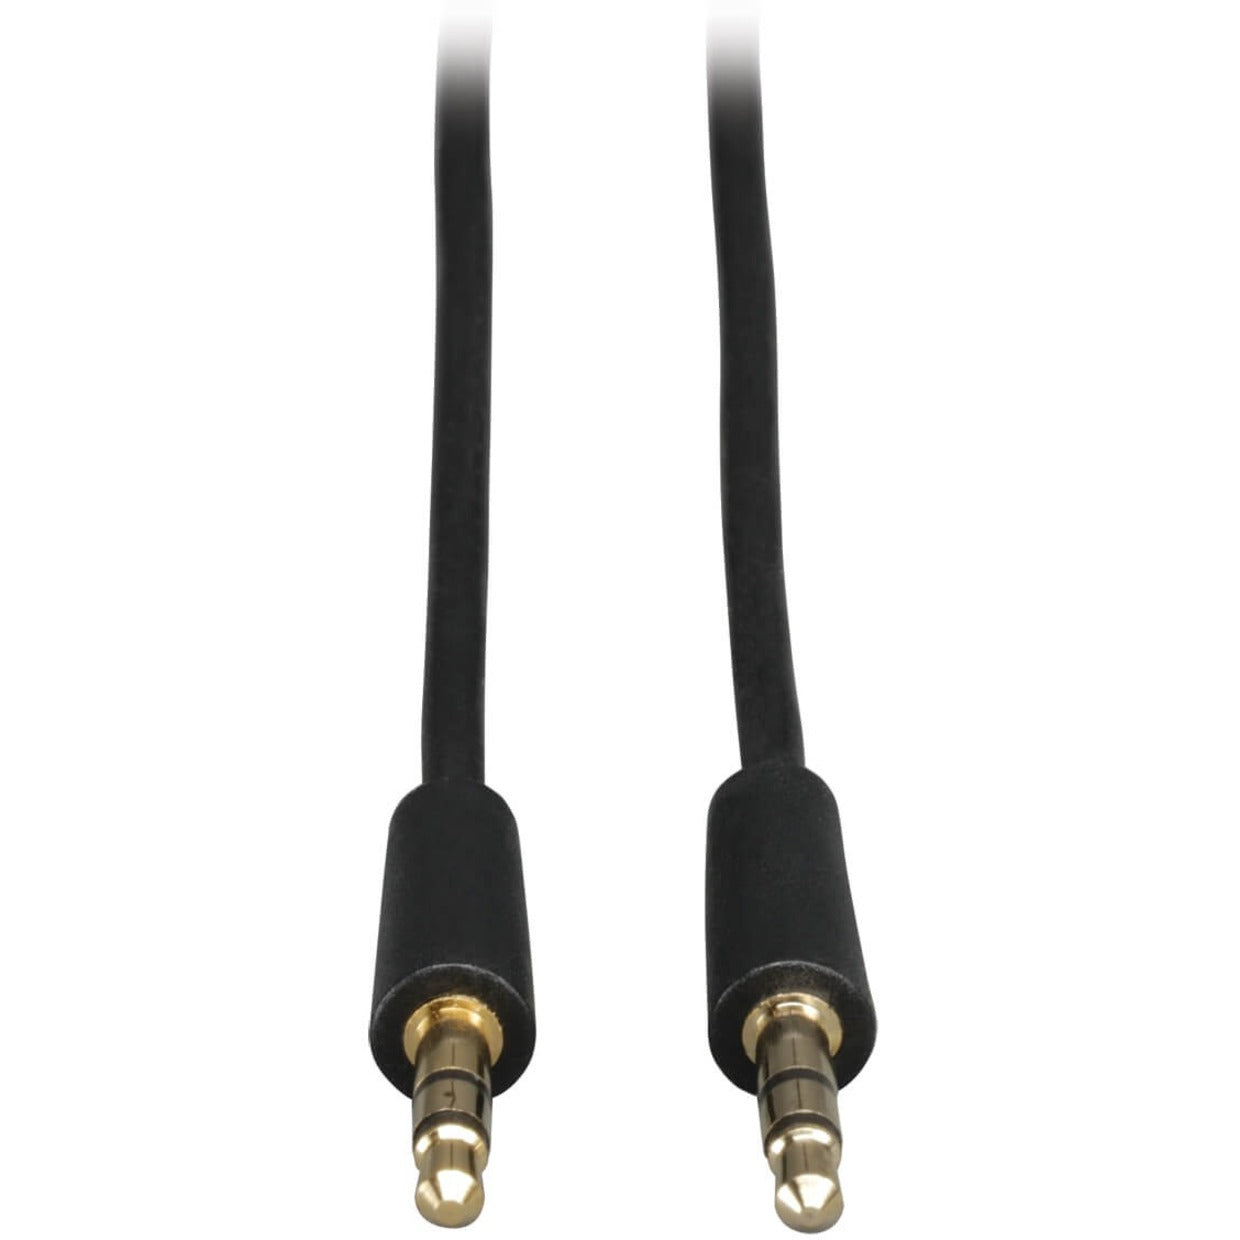 Tripp Lite P312-025 Mini-Stereo Dubbing Cord, 25-ft. Audio Cable, Strain Relief, Copper Conductor, Multimedia Speaker